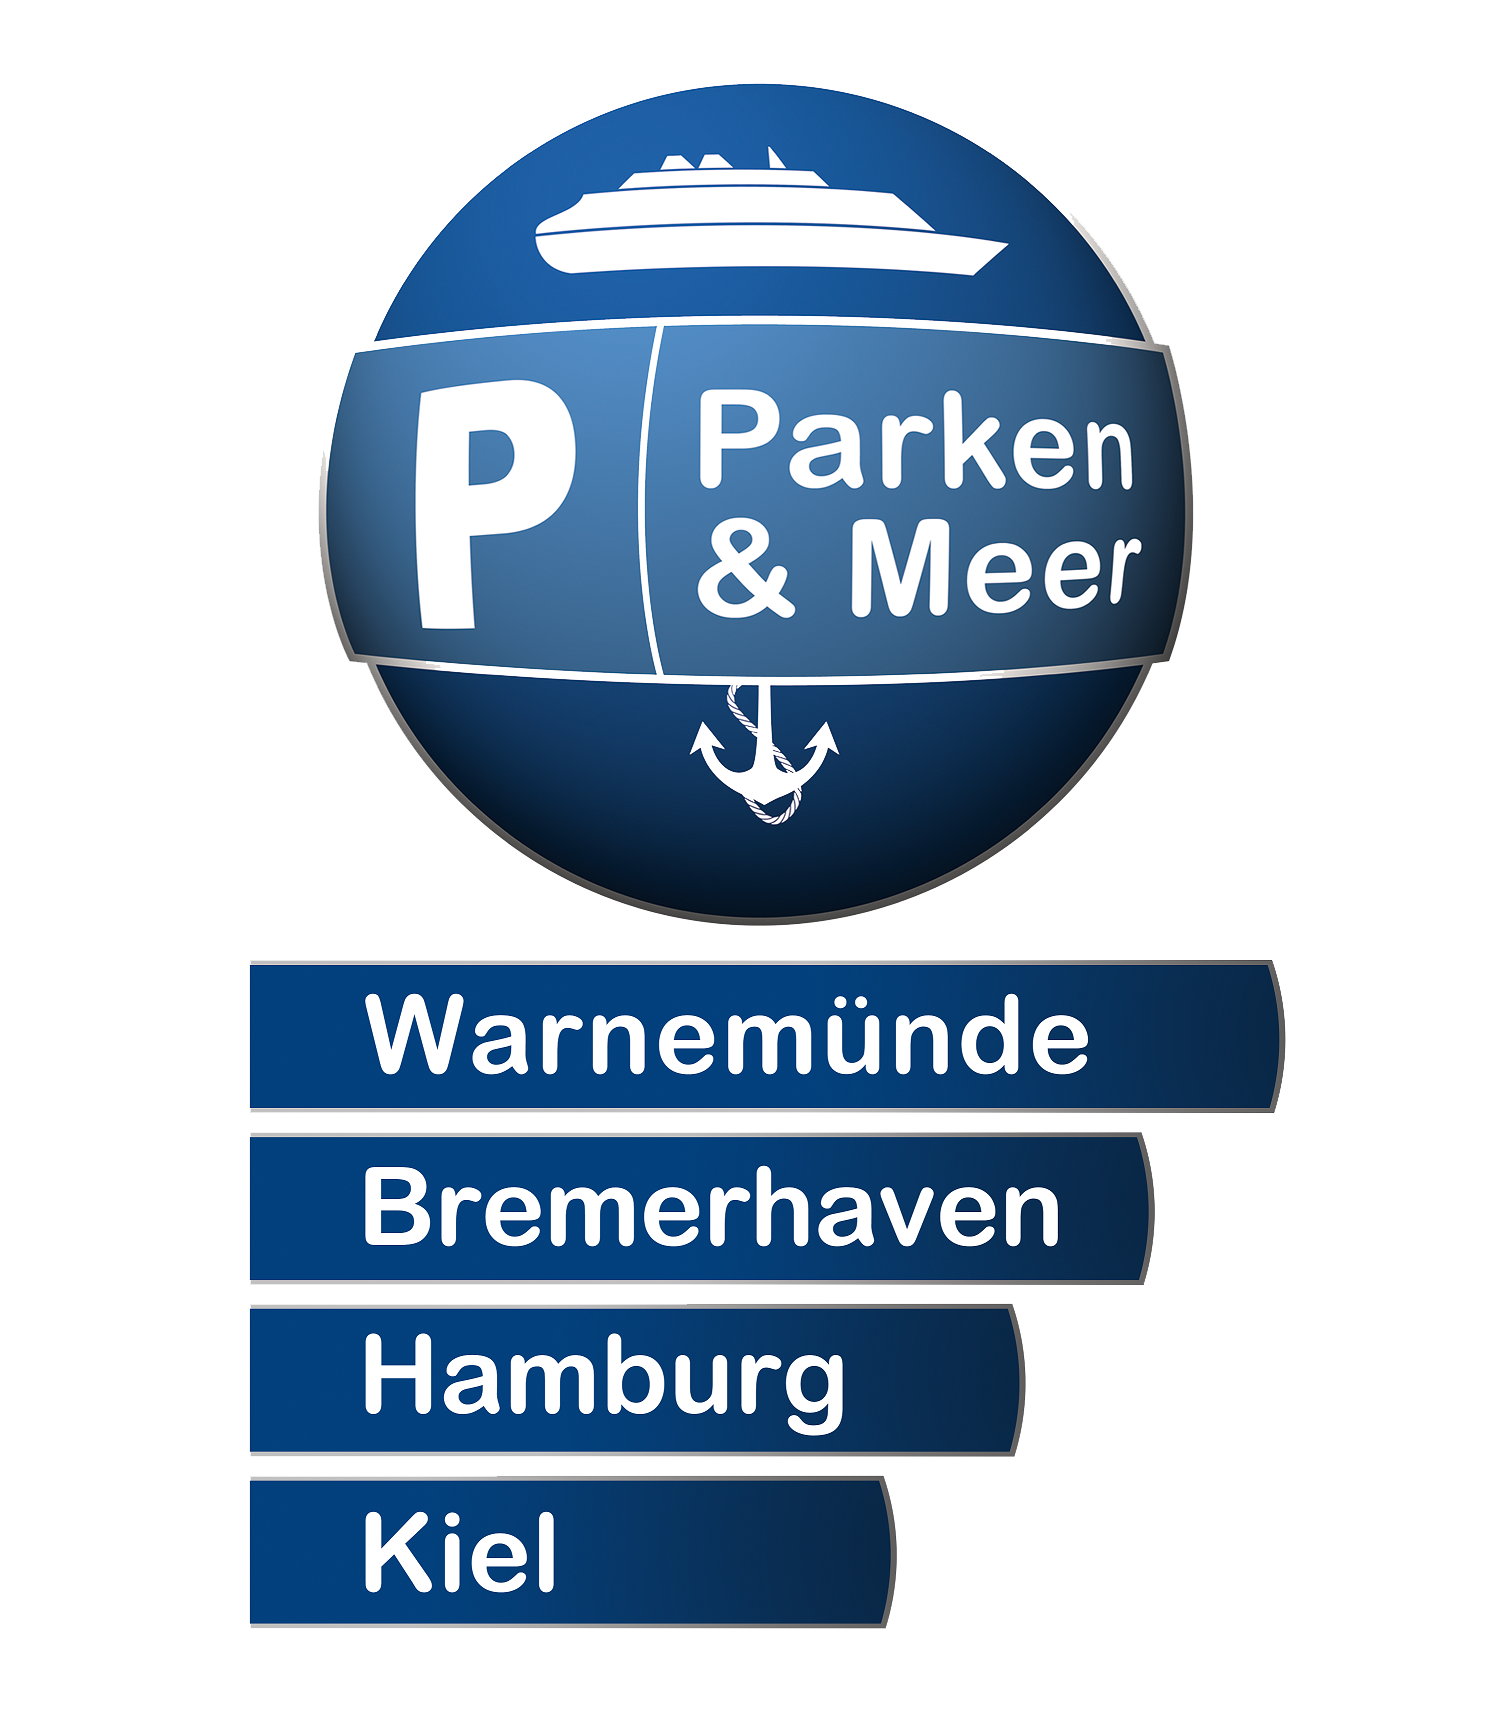 Parken und Meer - Parken in Warnemünde und Kiel